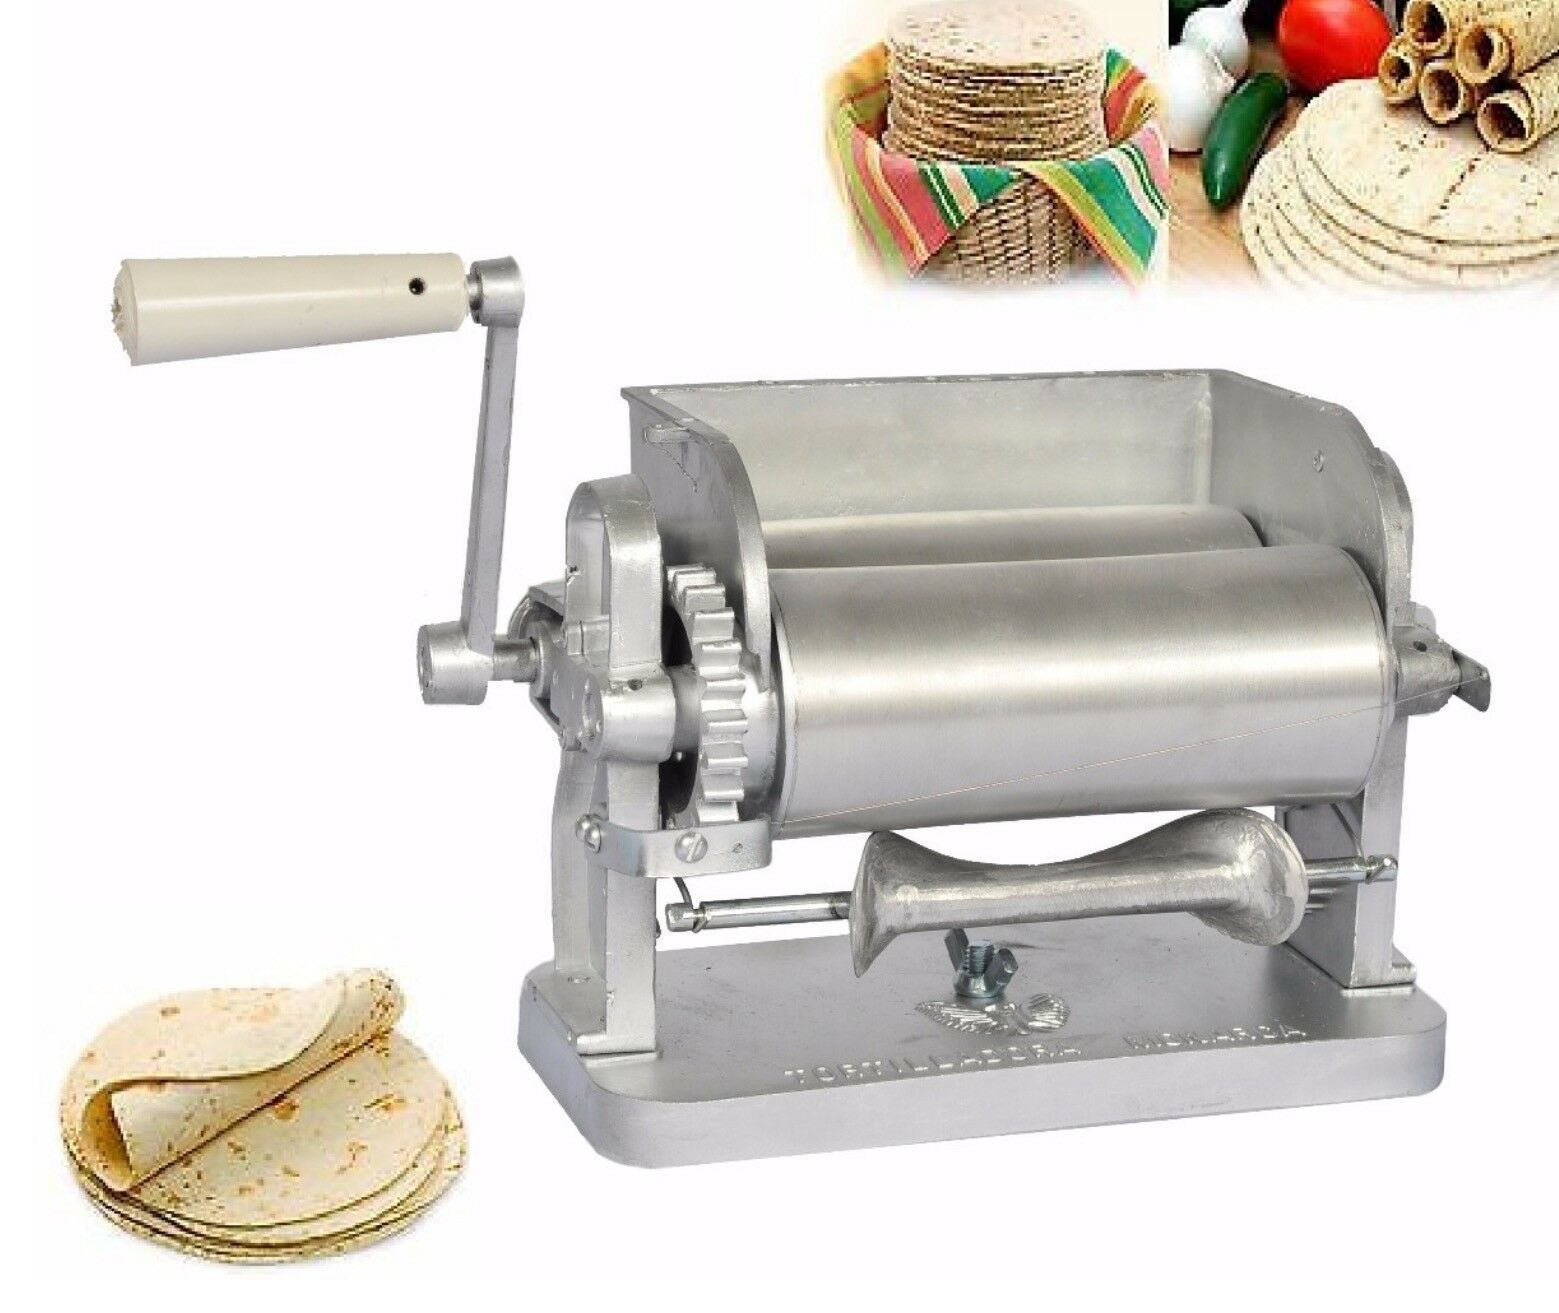 maquina para hacer tortillas precio - tacniz.com.